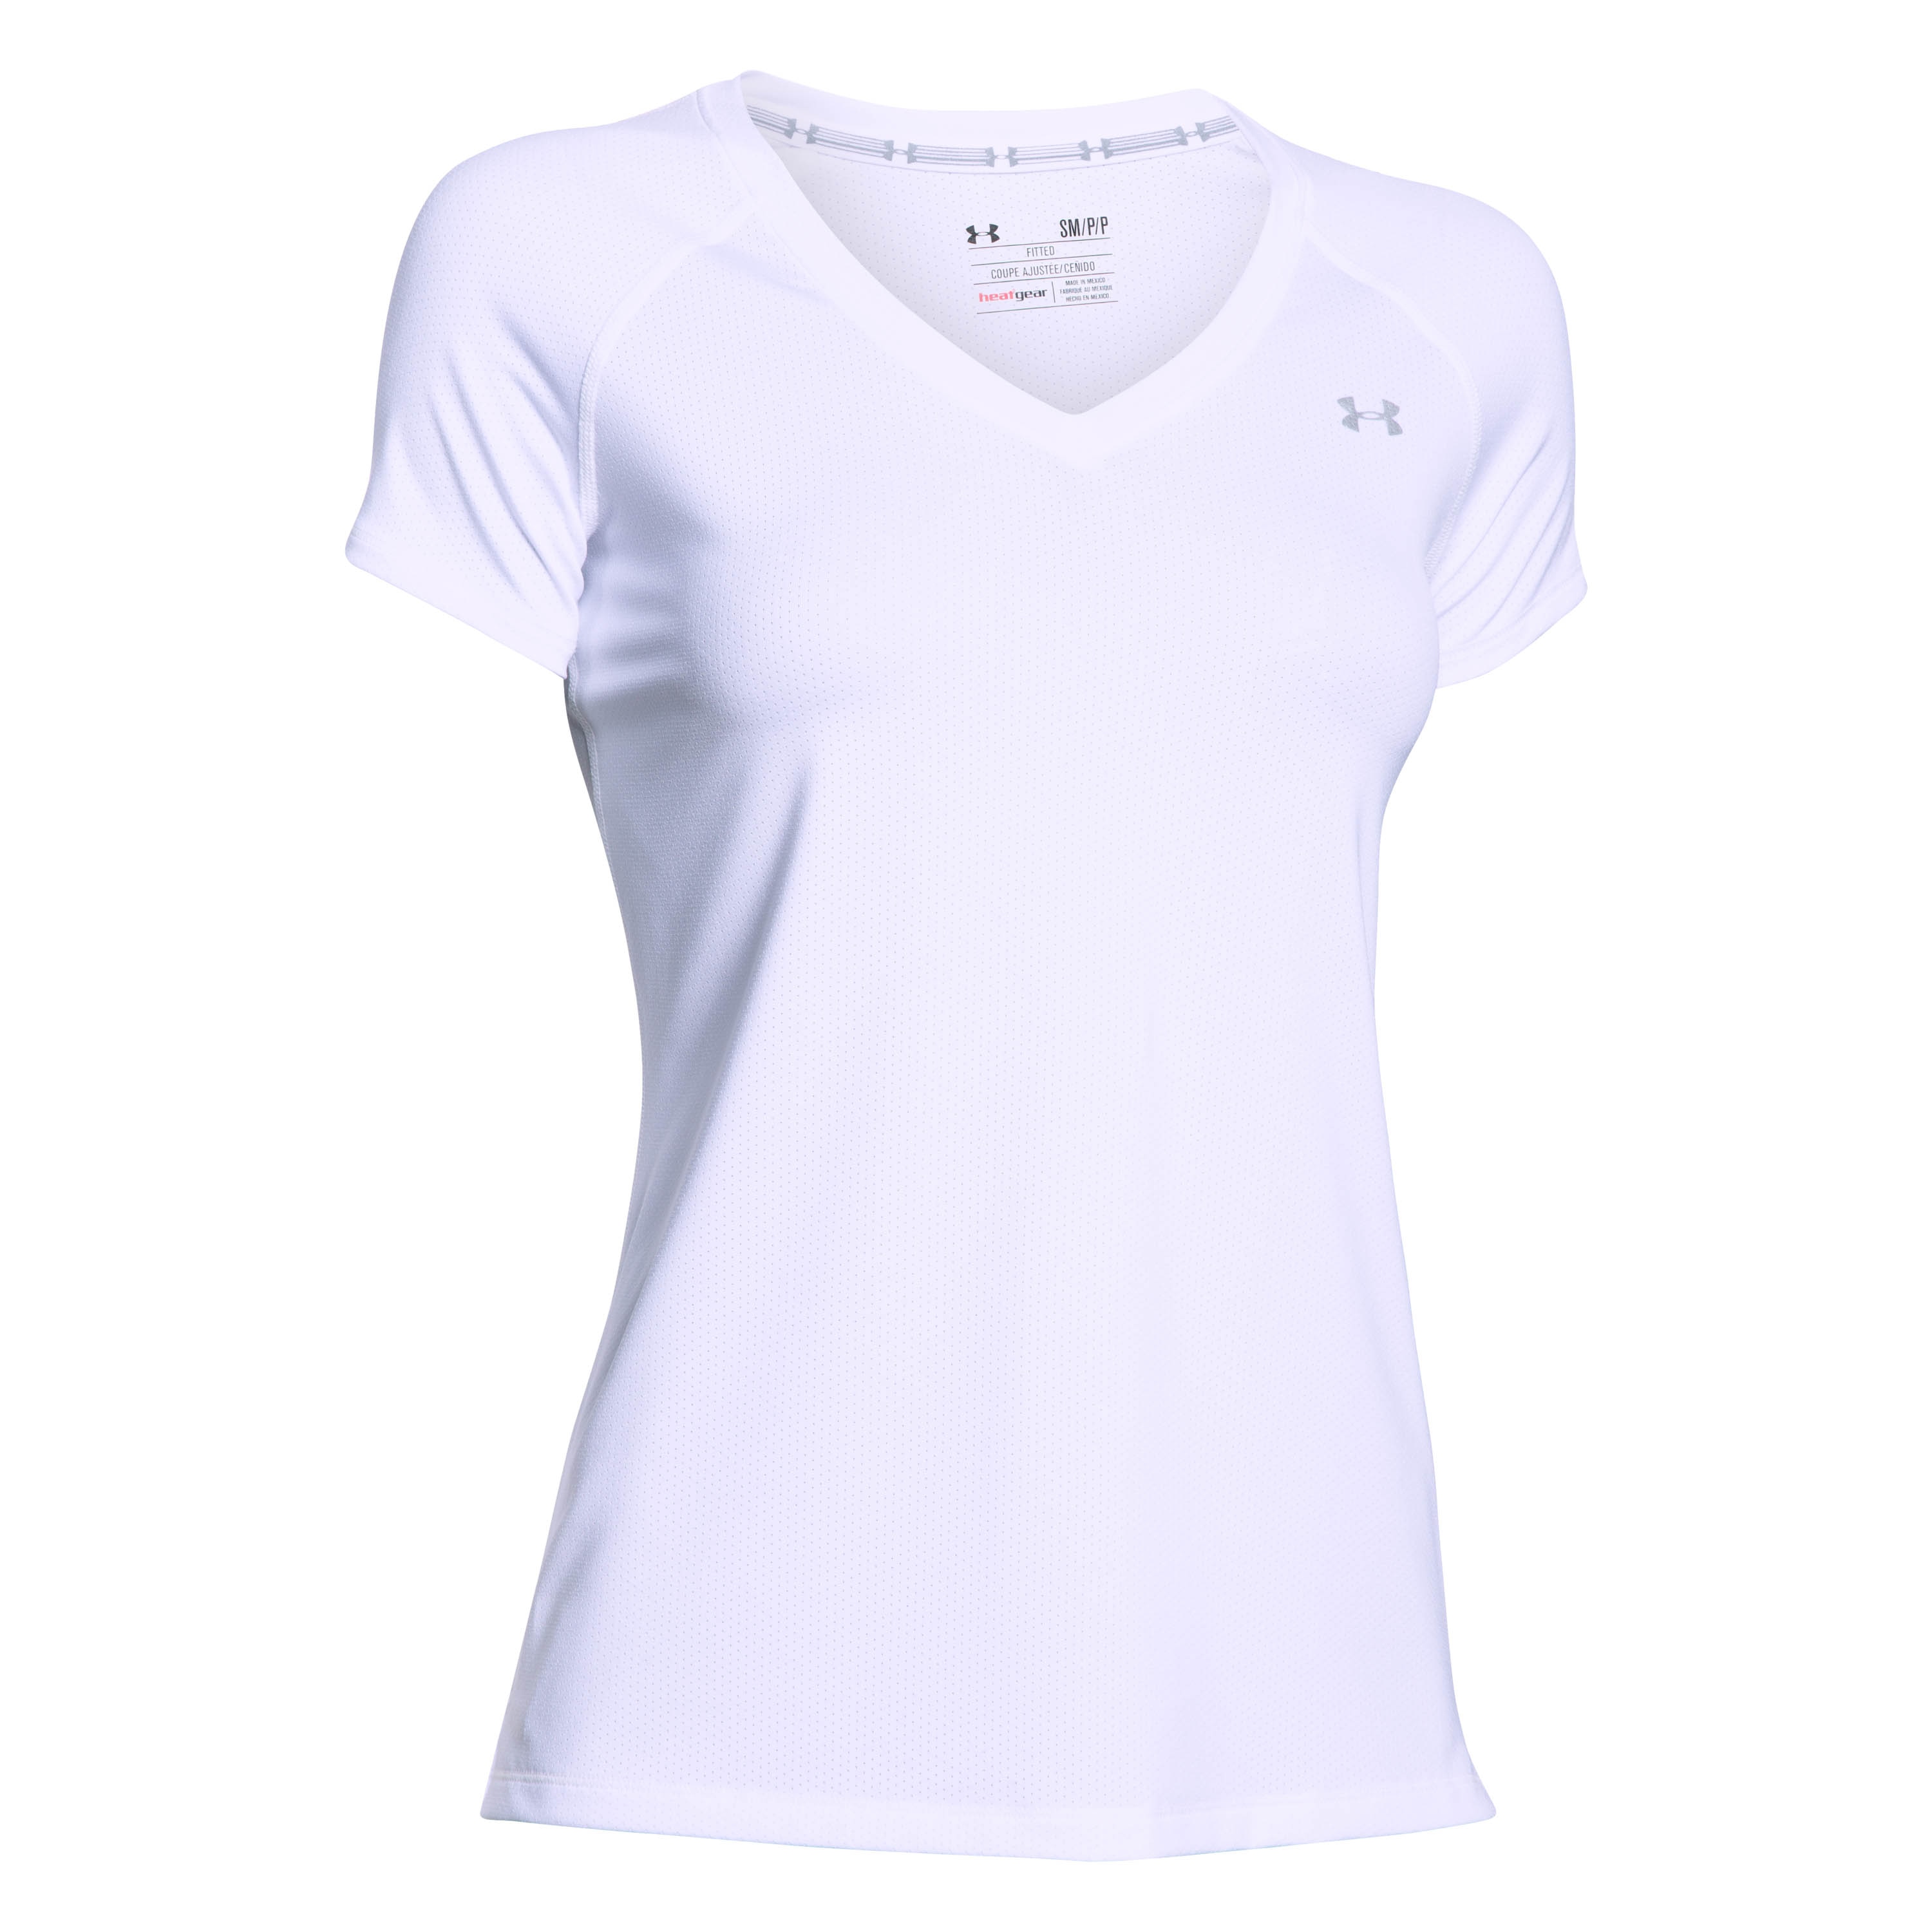 Under Armour Women T-Shirt HeatGear Armour white | Under Armour Women T ...